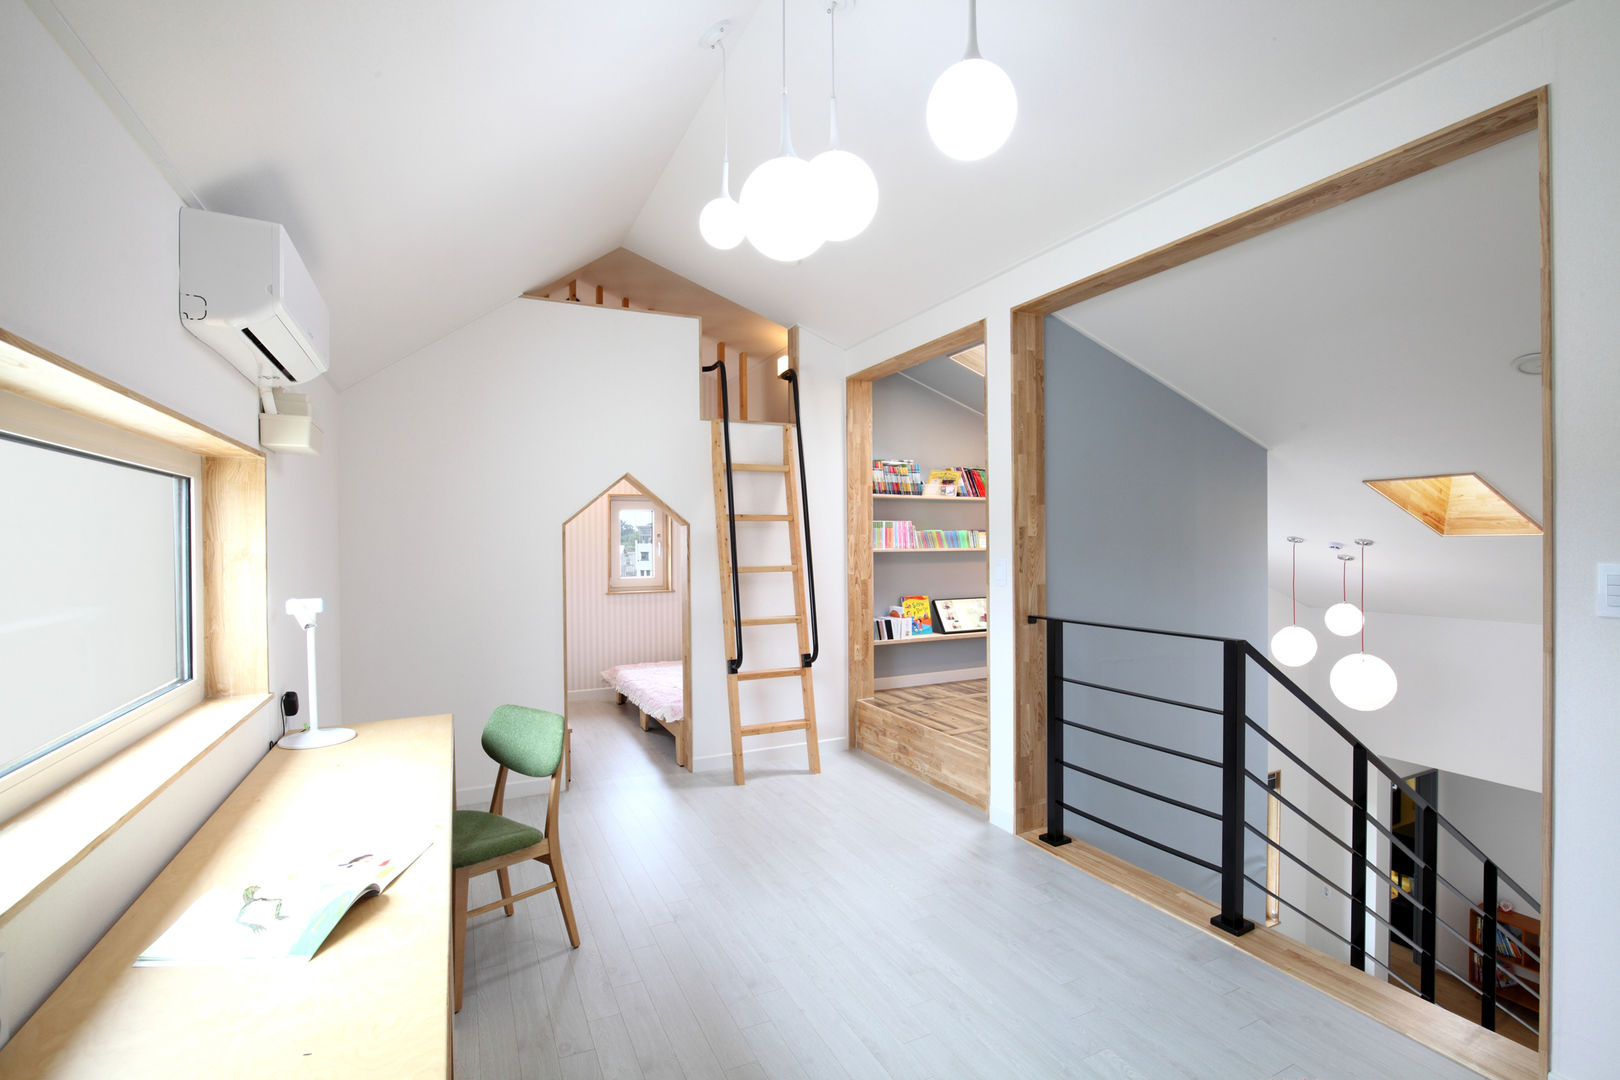 장성 - 세아이가 있는 하얀집, 주택설계전문 디자인그룹 홈스타일토토 주택설계전문 디자인그룹 홈스타일토토 嬰兒房/兒童房 刨花板